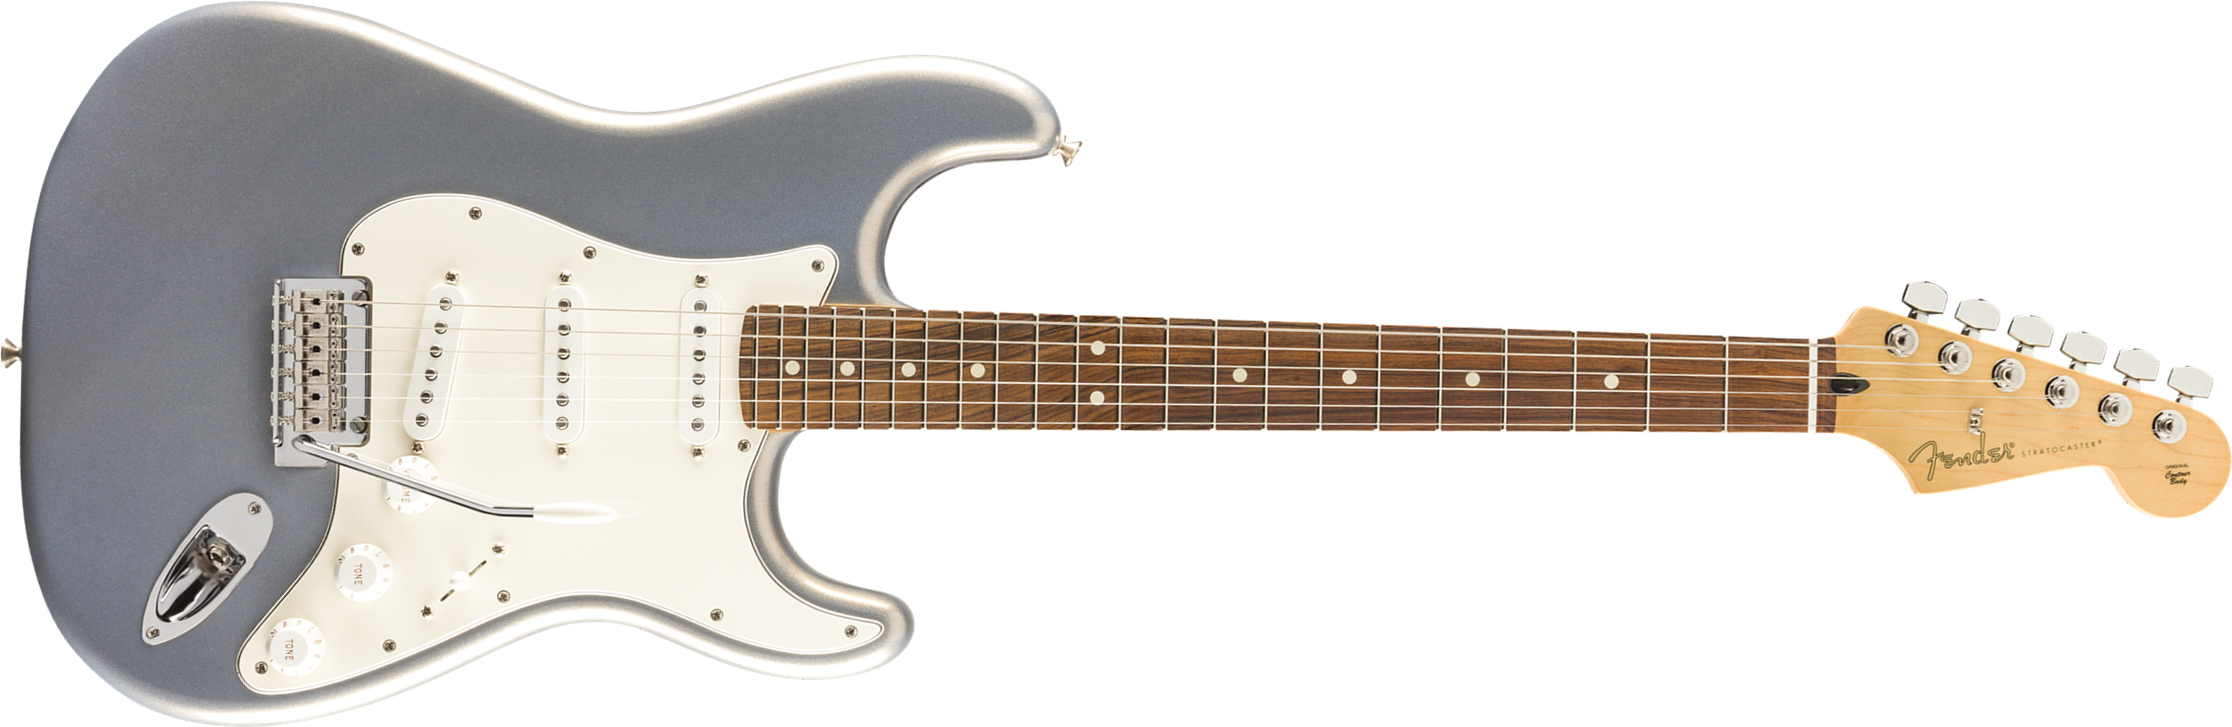 Fender Strat Player Mex 3s Trem Pf - Silver - Elektrische gitaar in Str-vorm - Main picture